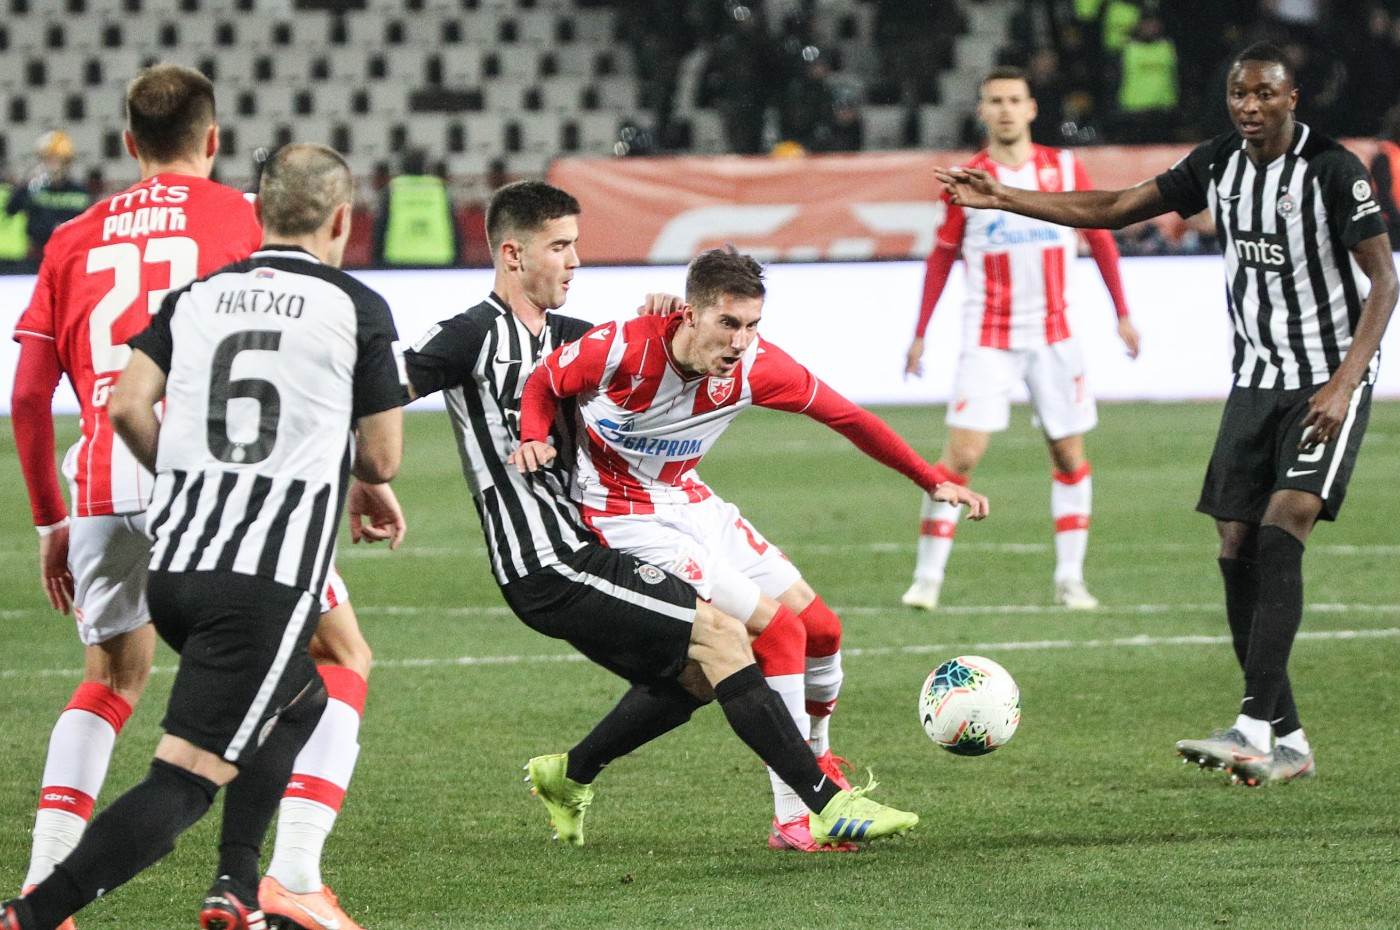  Večiti derbi Crvena zvezda - Partizan Kup Srbije polufinale 2020 